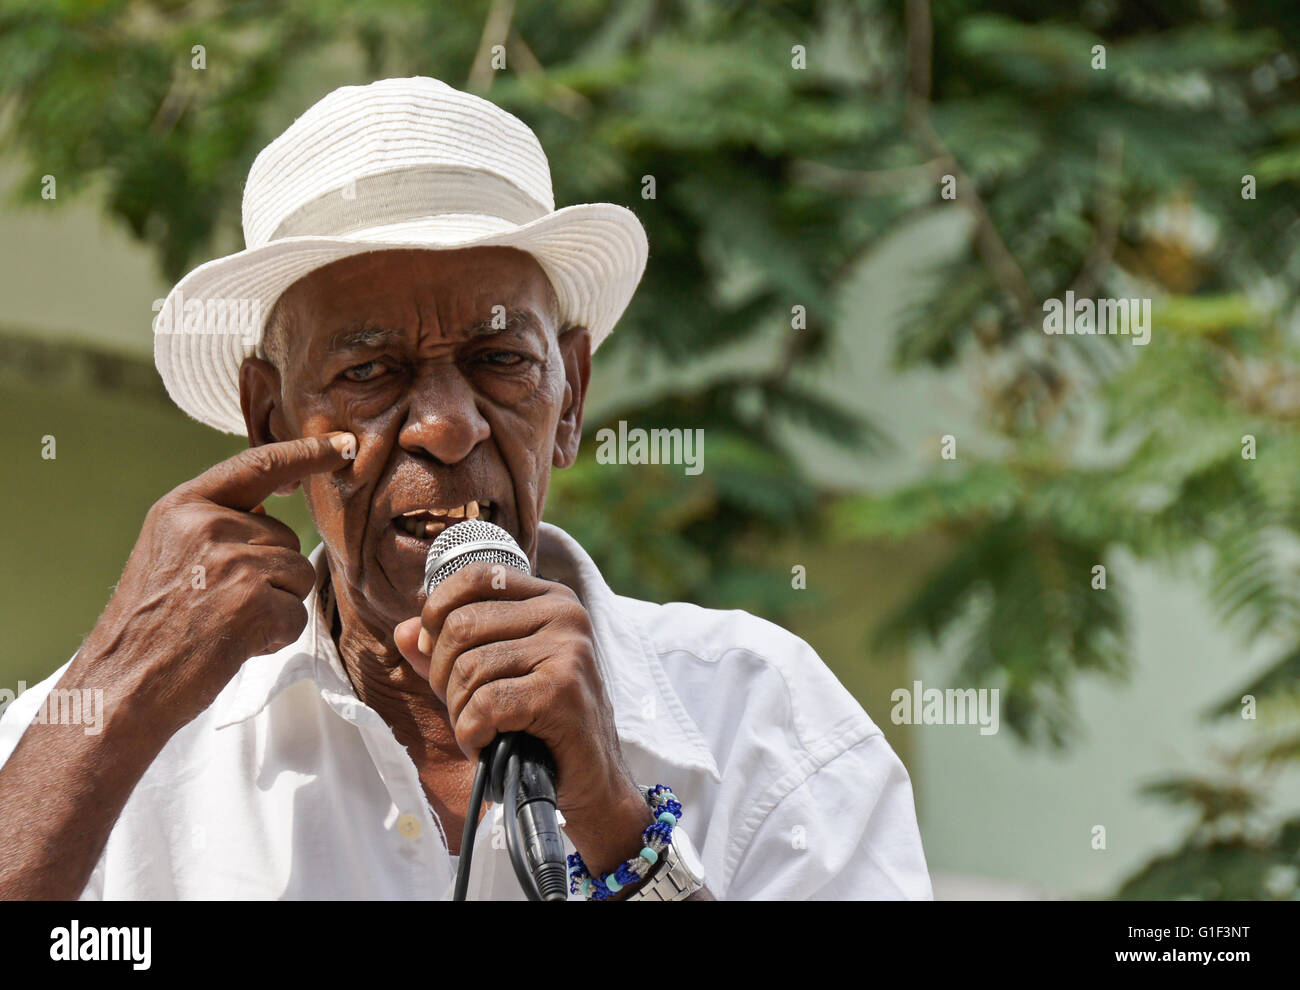 Old man singing at El Gran Palenque, Vedado, Havana, Cuba Stock Photo